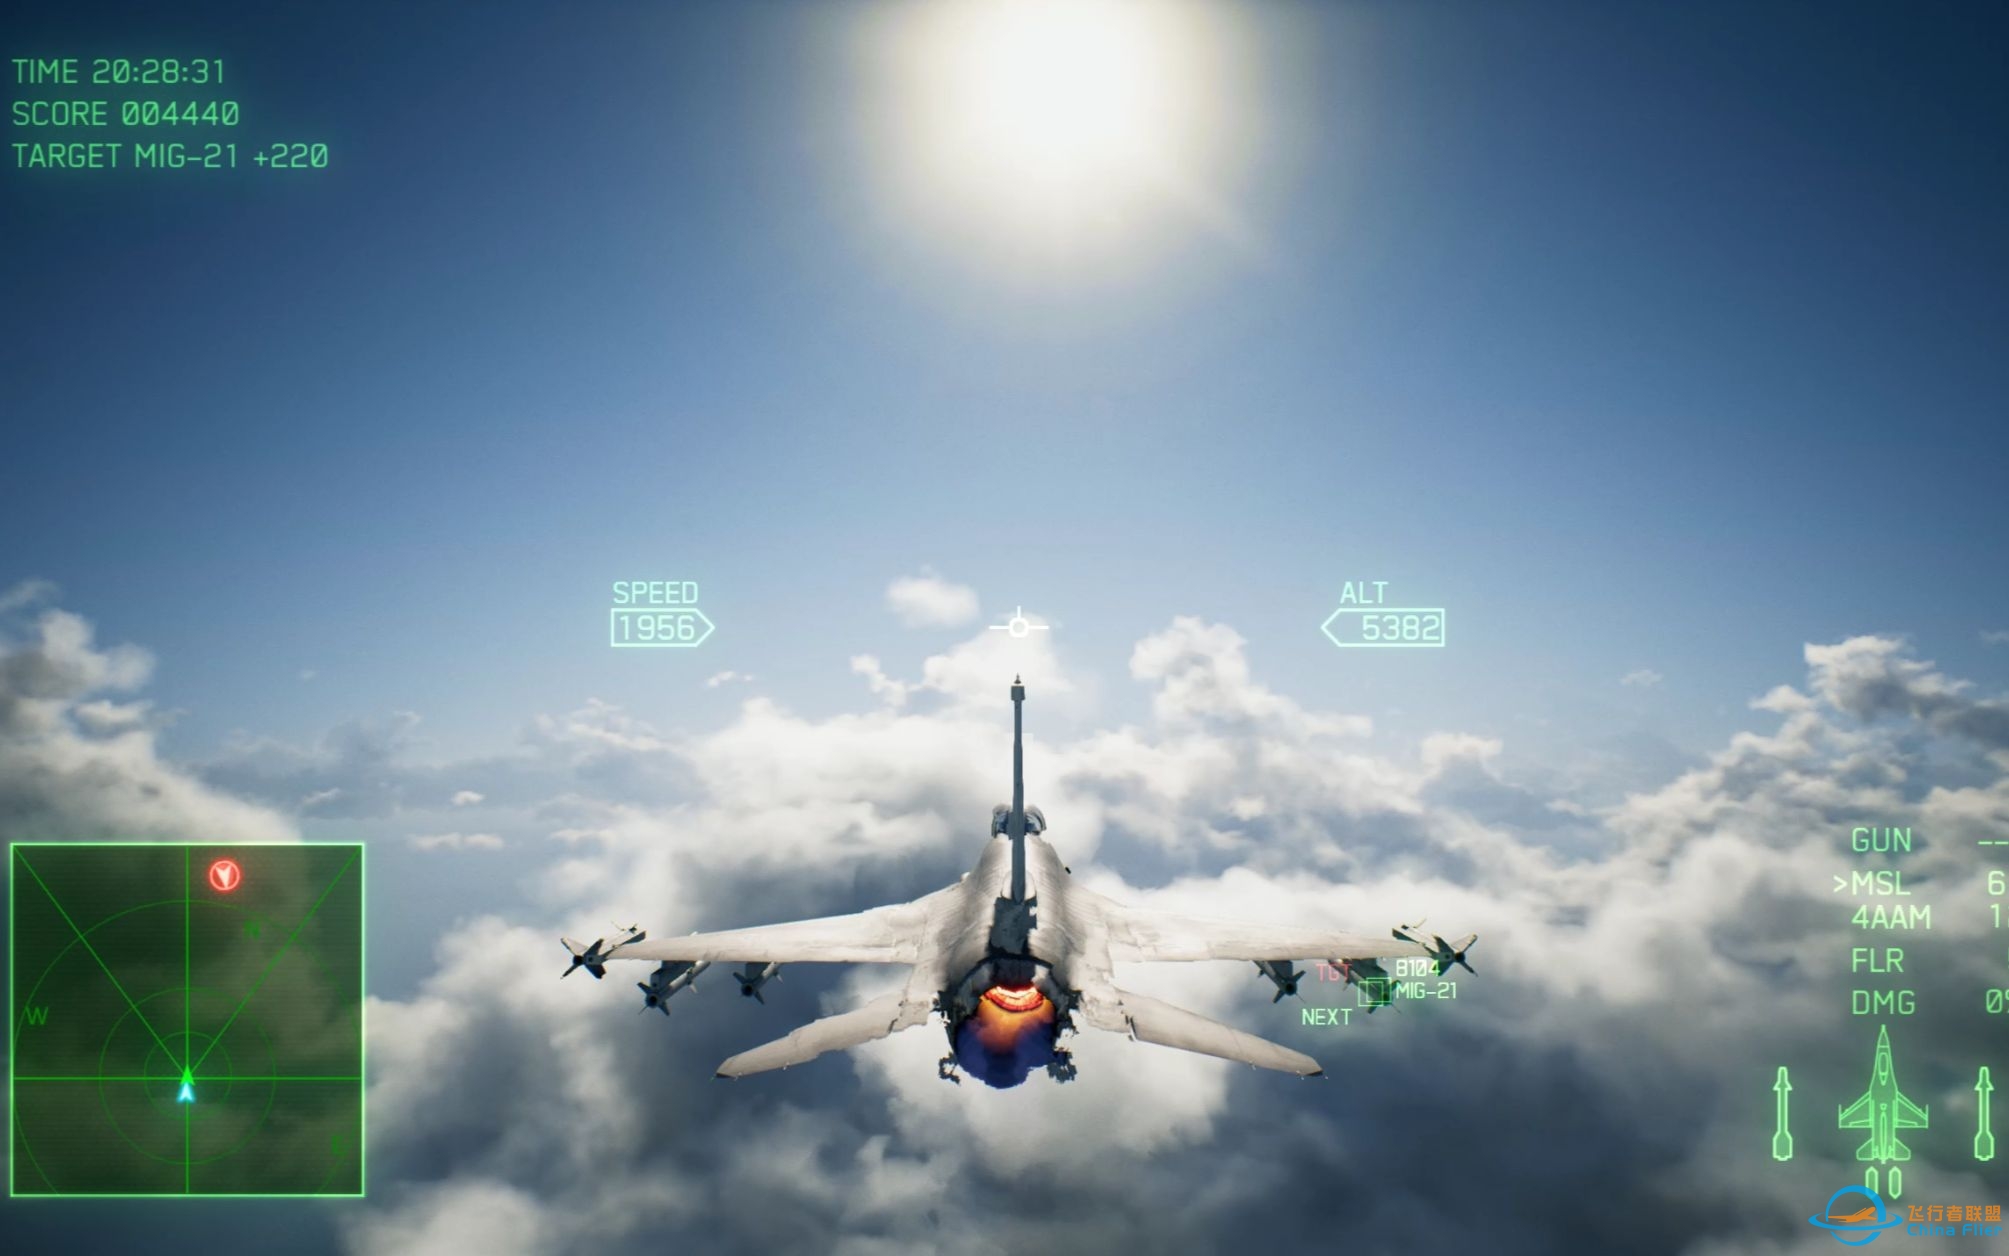 依旧是最棒的空战游戏系列，好久没有玩到这么爽快的空战游戏了，皇牌空战7初体验。-7993 